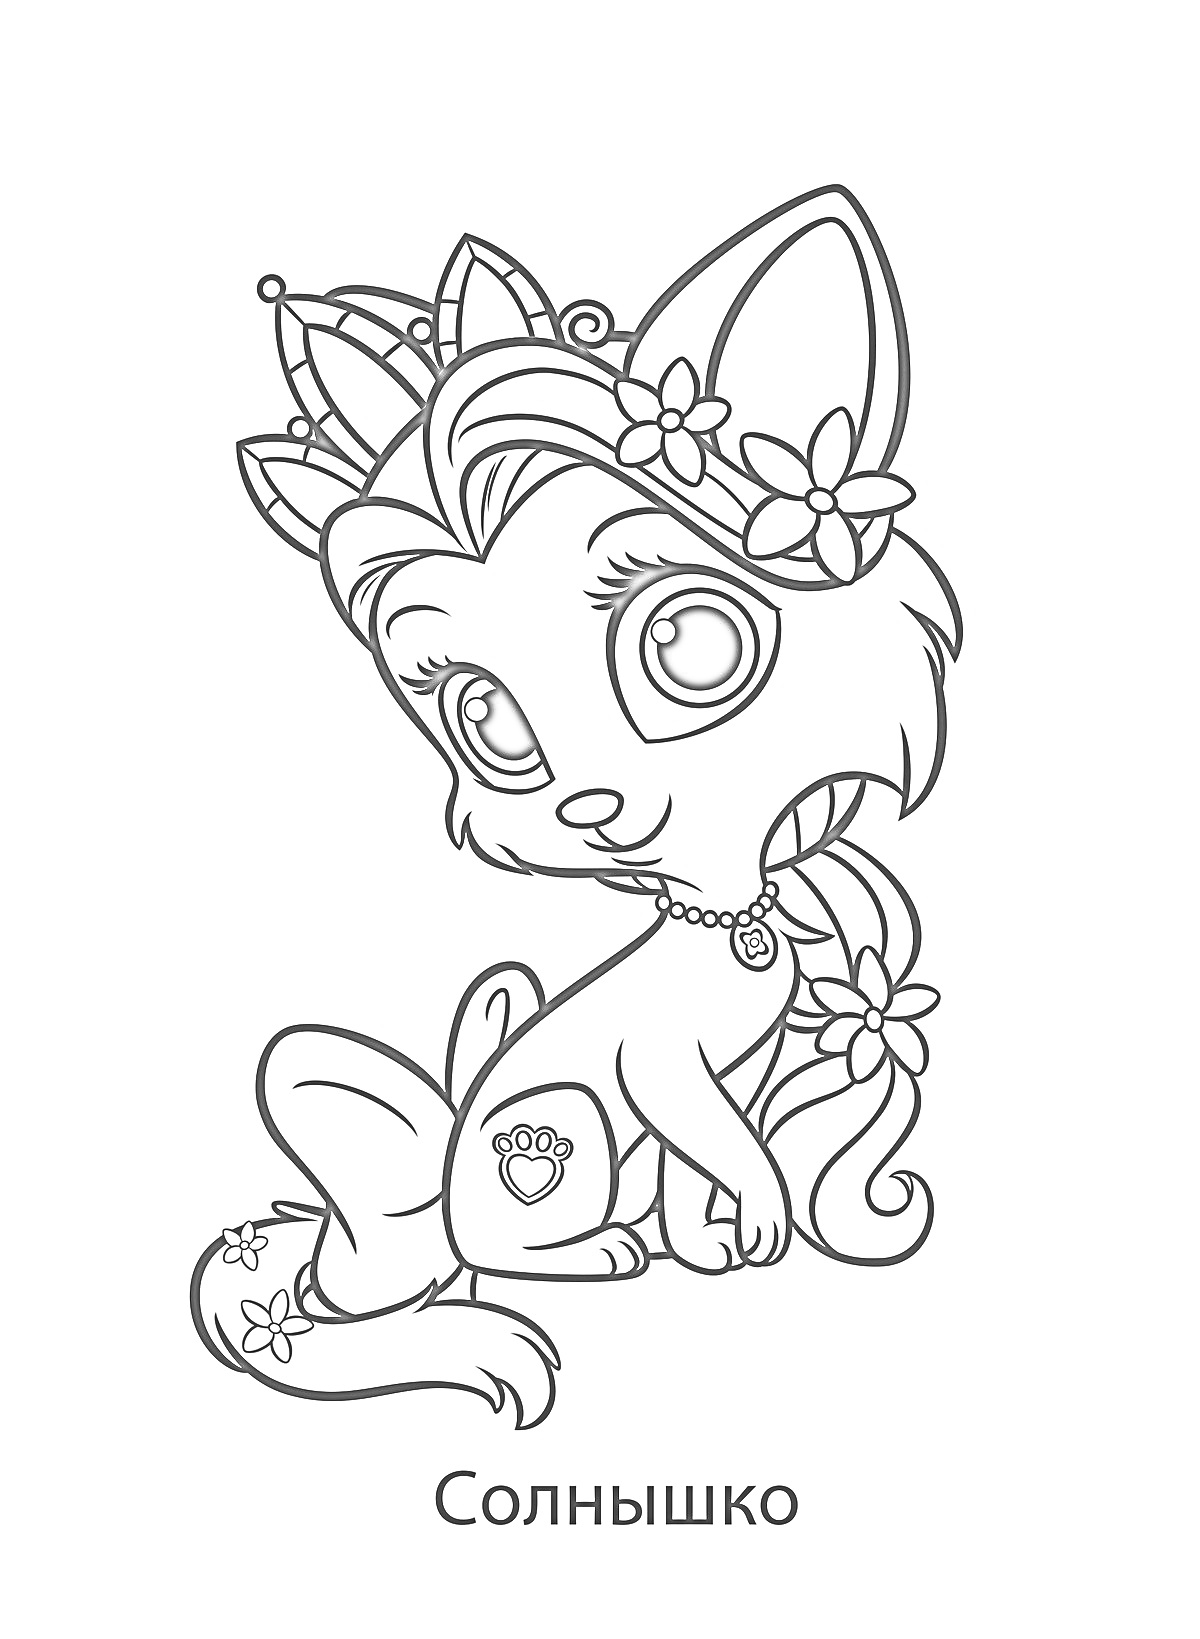 Кошечка с короной, цветами, ожерельем и бантиком на хвостике (Солнышко)